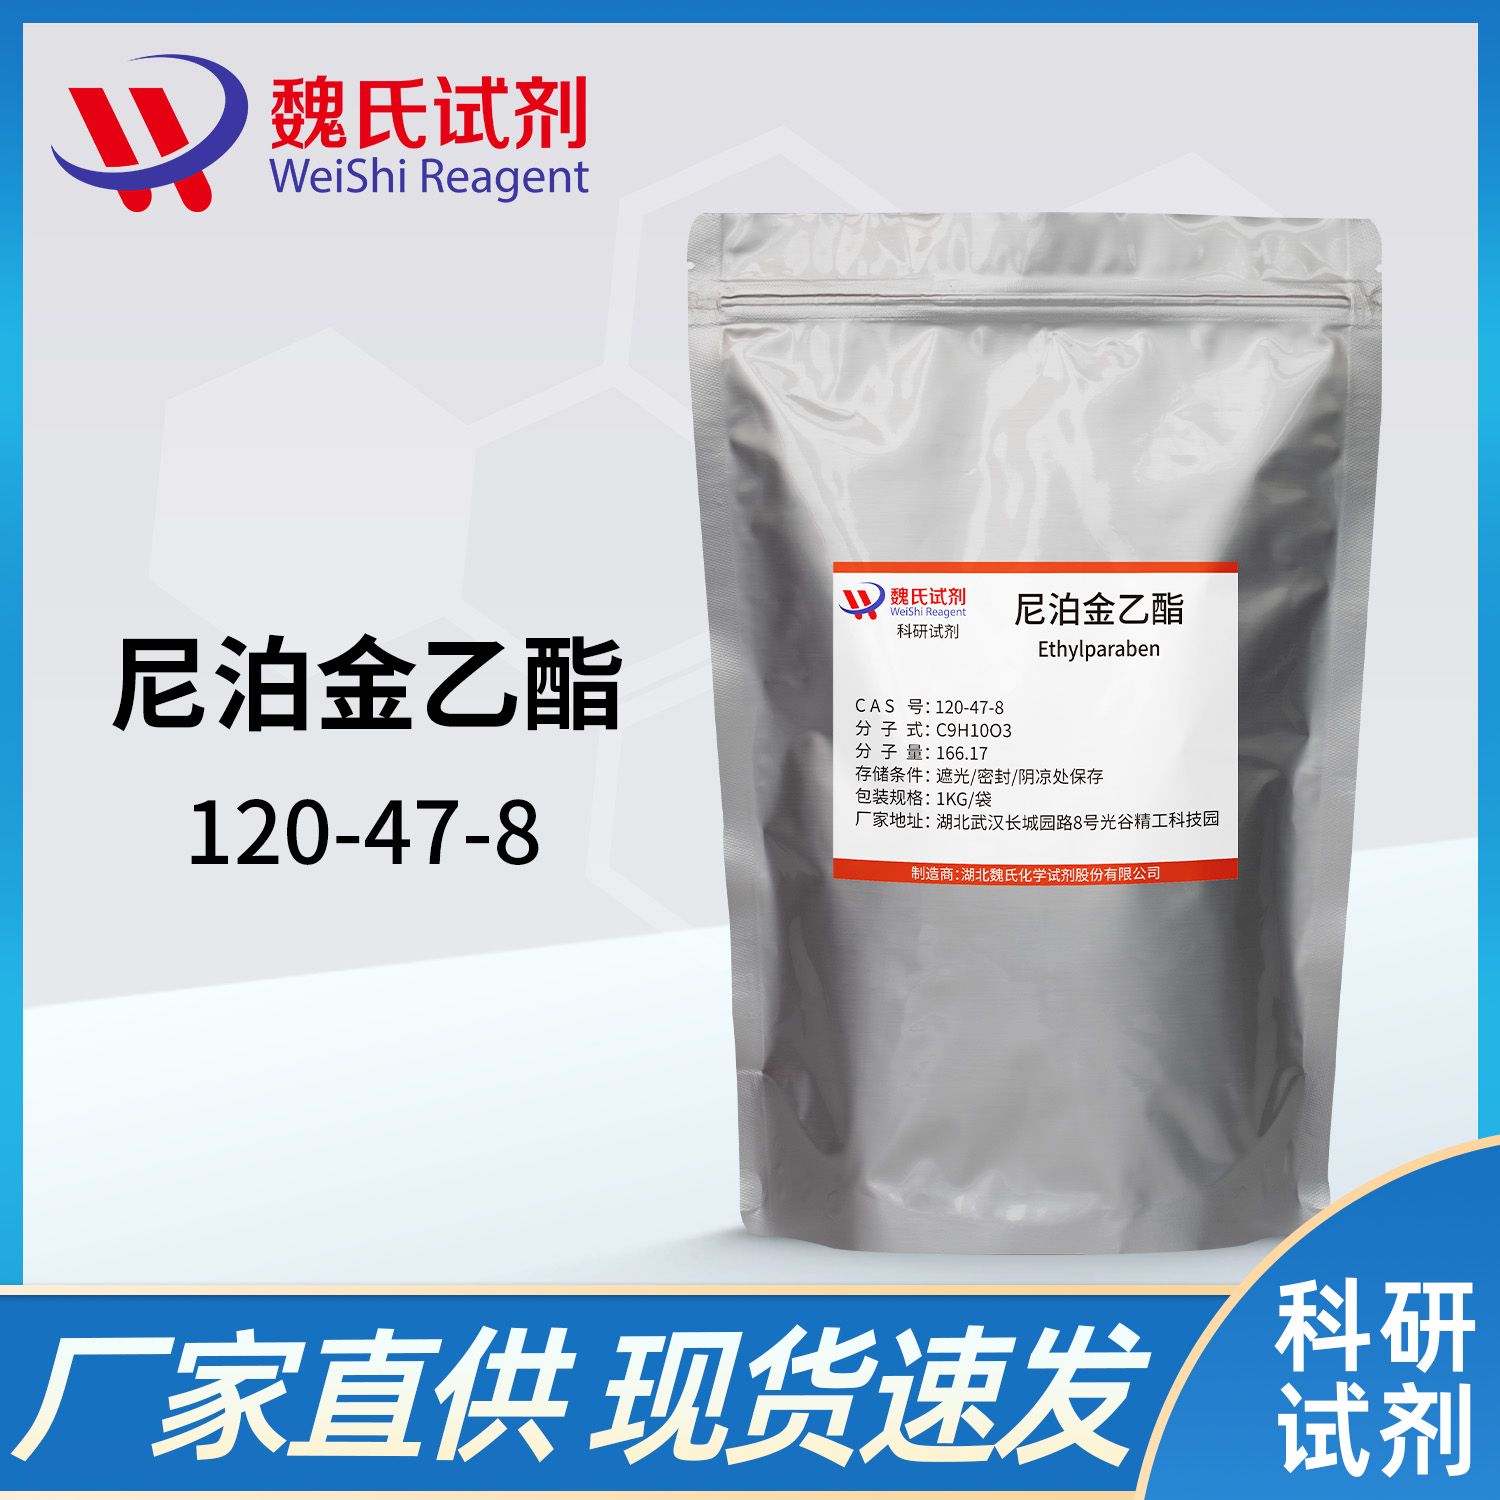 120-47-8 /尼泊金乙酯/Ethyl 4-hydroxybenzoate